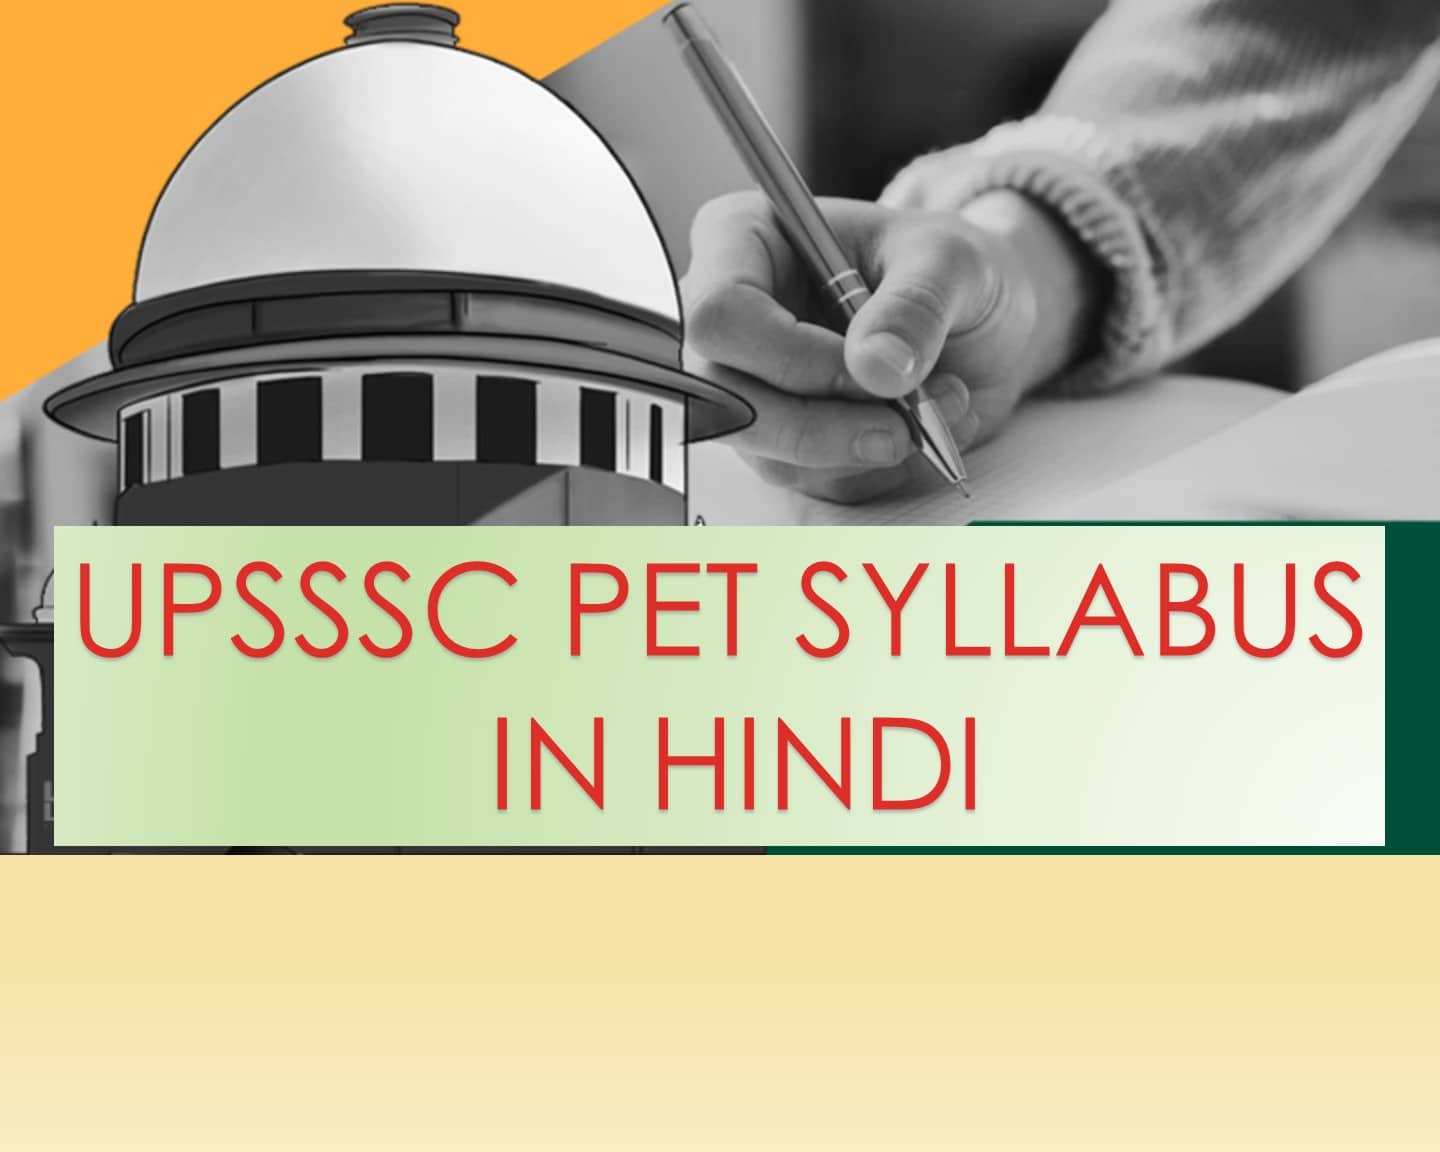 upsssc pet syllabus in hindi